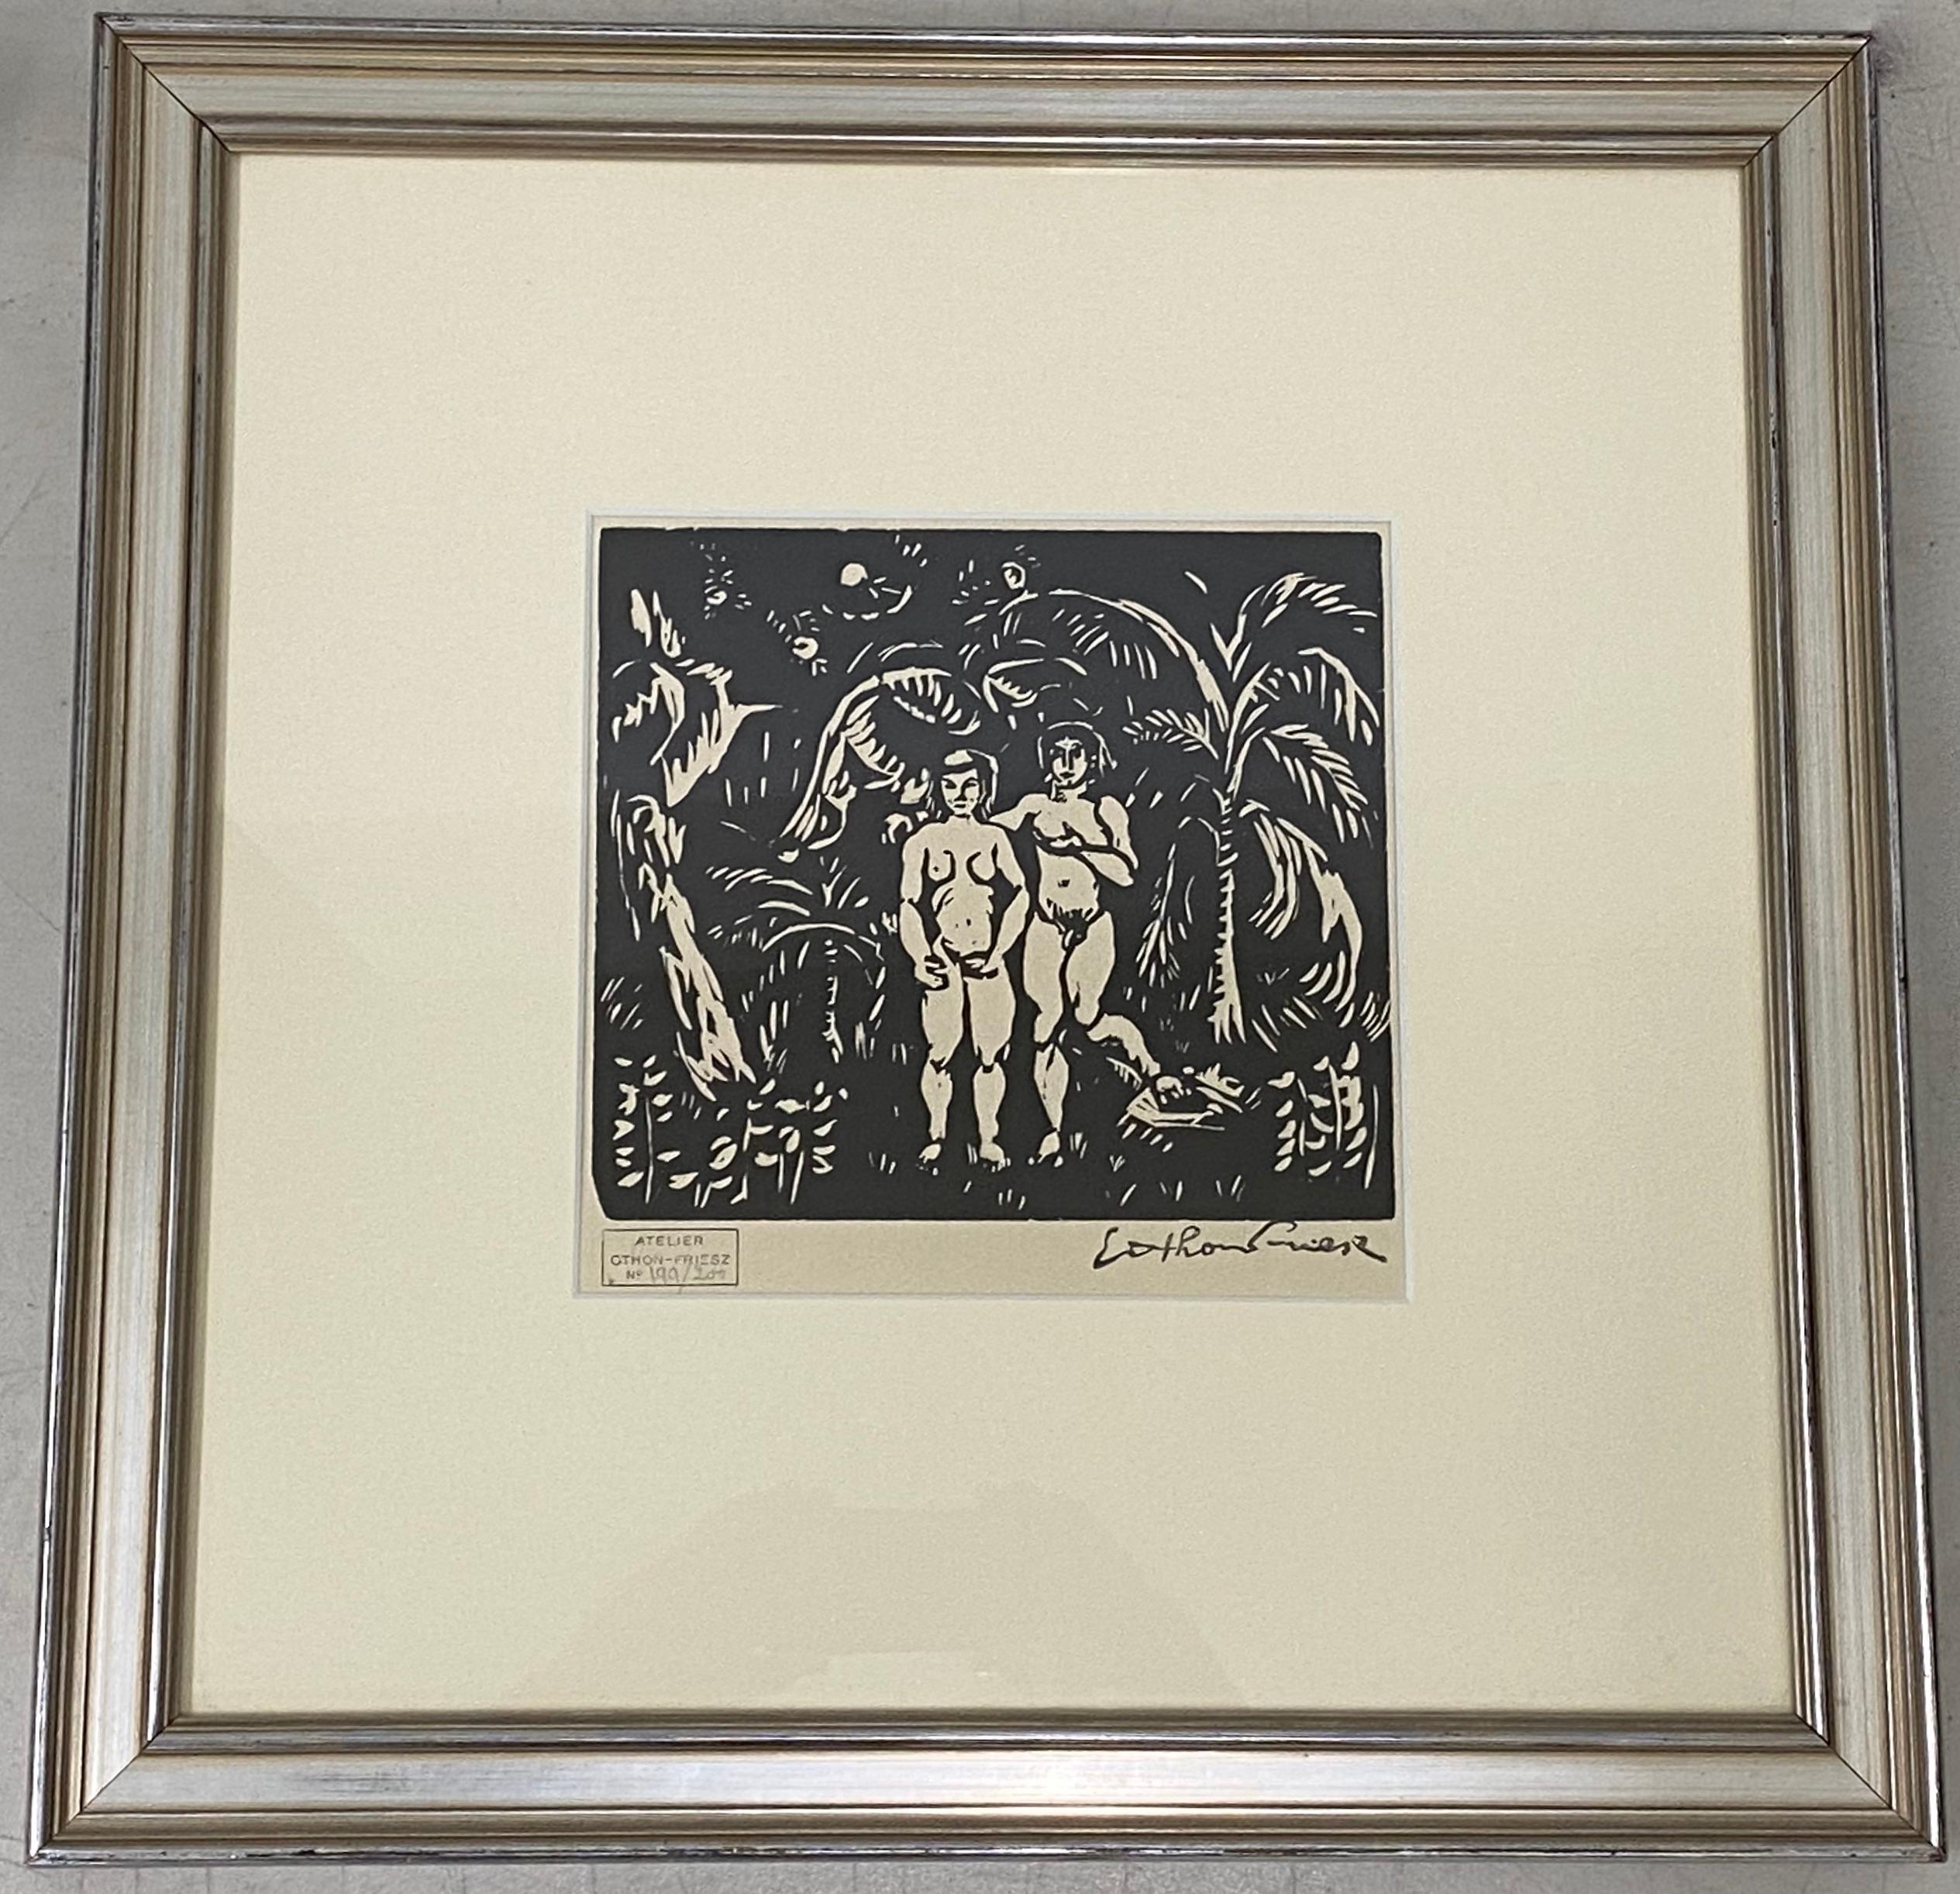 Achille-Émile Othon Friesz Figurative Print - Achille-Emile Othon Friesz "Adam & Eve in Paradise" Woodcut C.1910